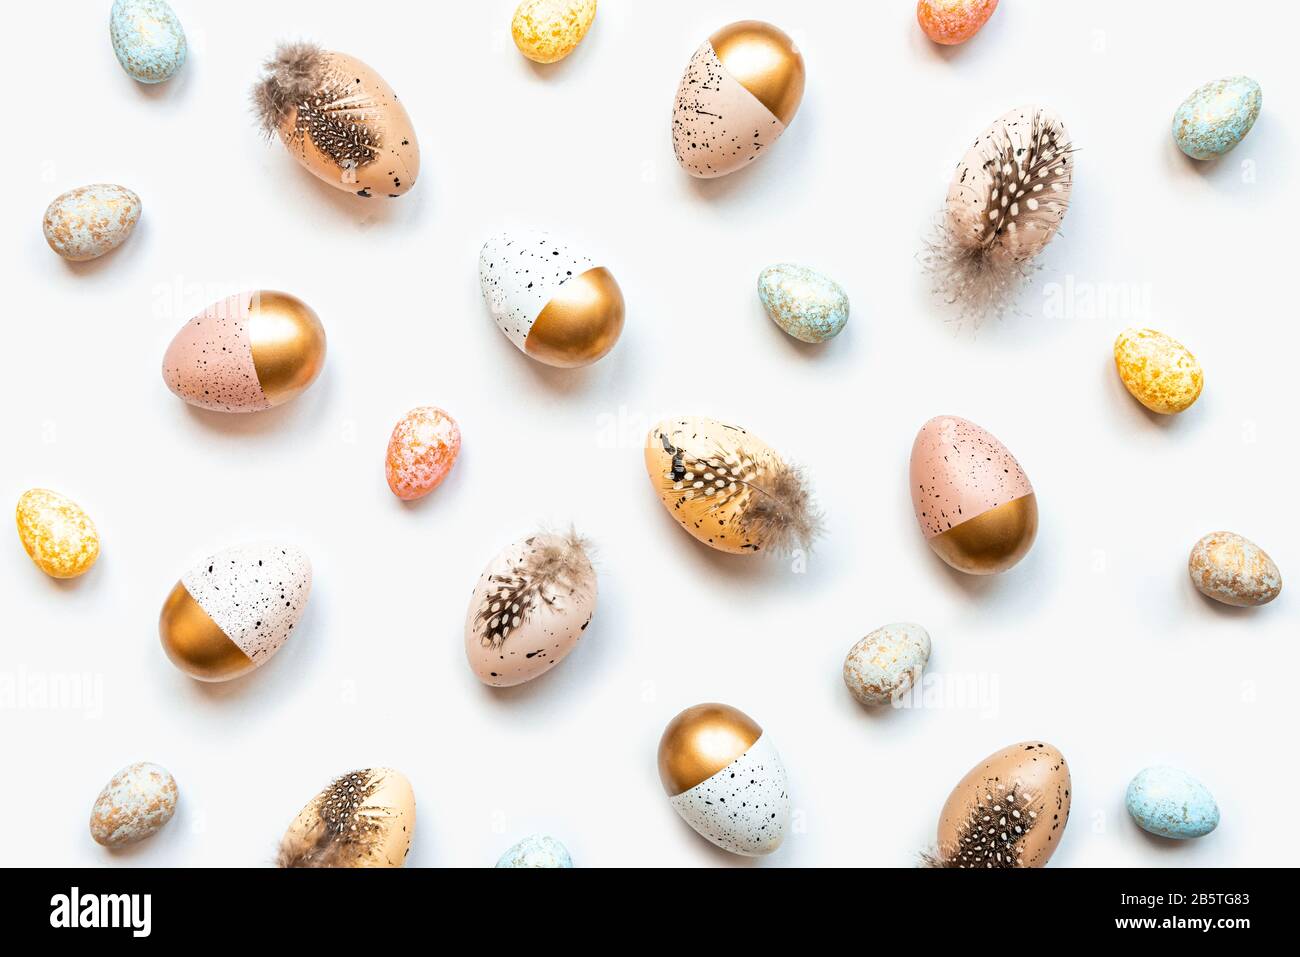 Vista superior de huevos de Pascua esparcidos coloreados con pintura dorada en diferentes patrones y colores. Fondo blanco. Foto de stock